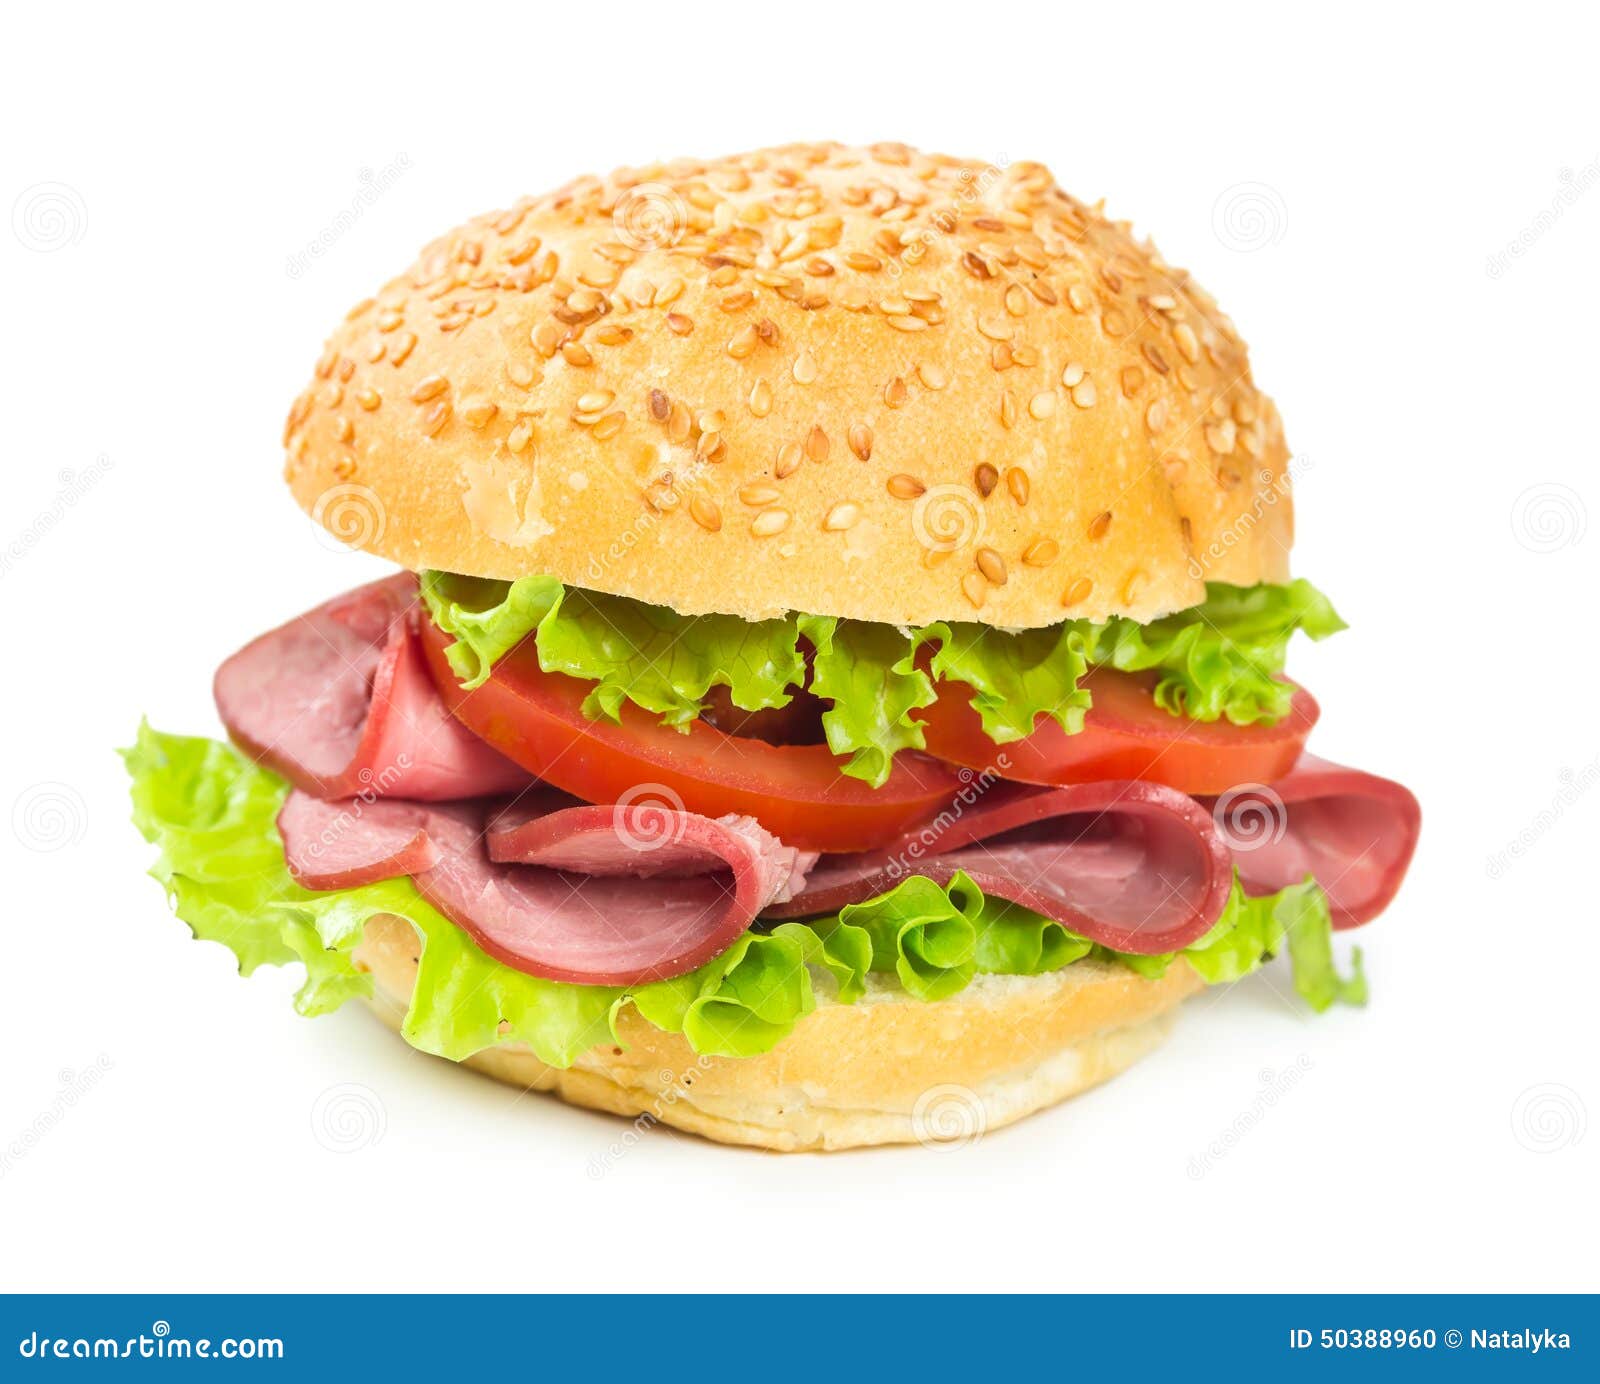 Круглый сэндвич. Бургер ветчина сыр. Сэндвич круглый. Гамбургер с ветчиной. Бургер с ветчиной и сыром.